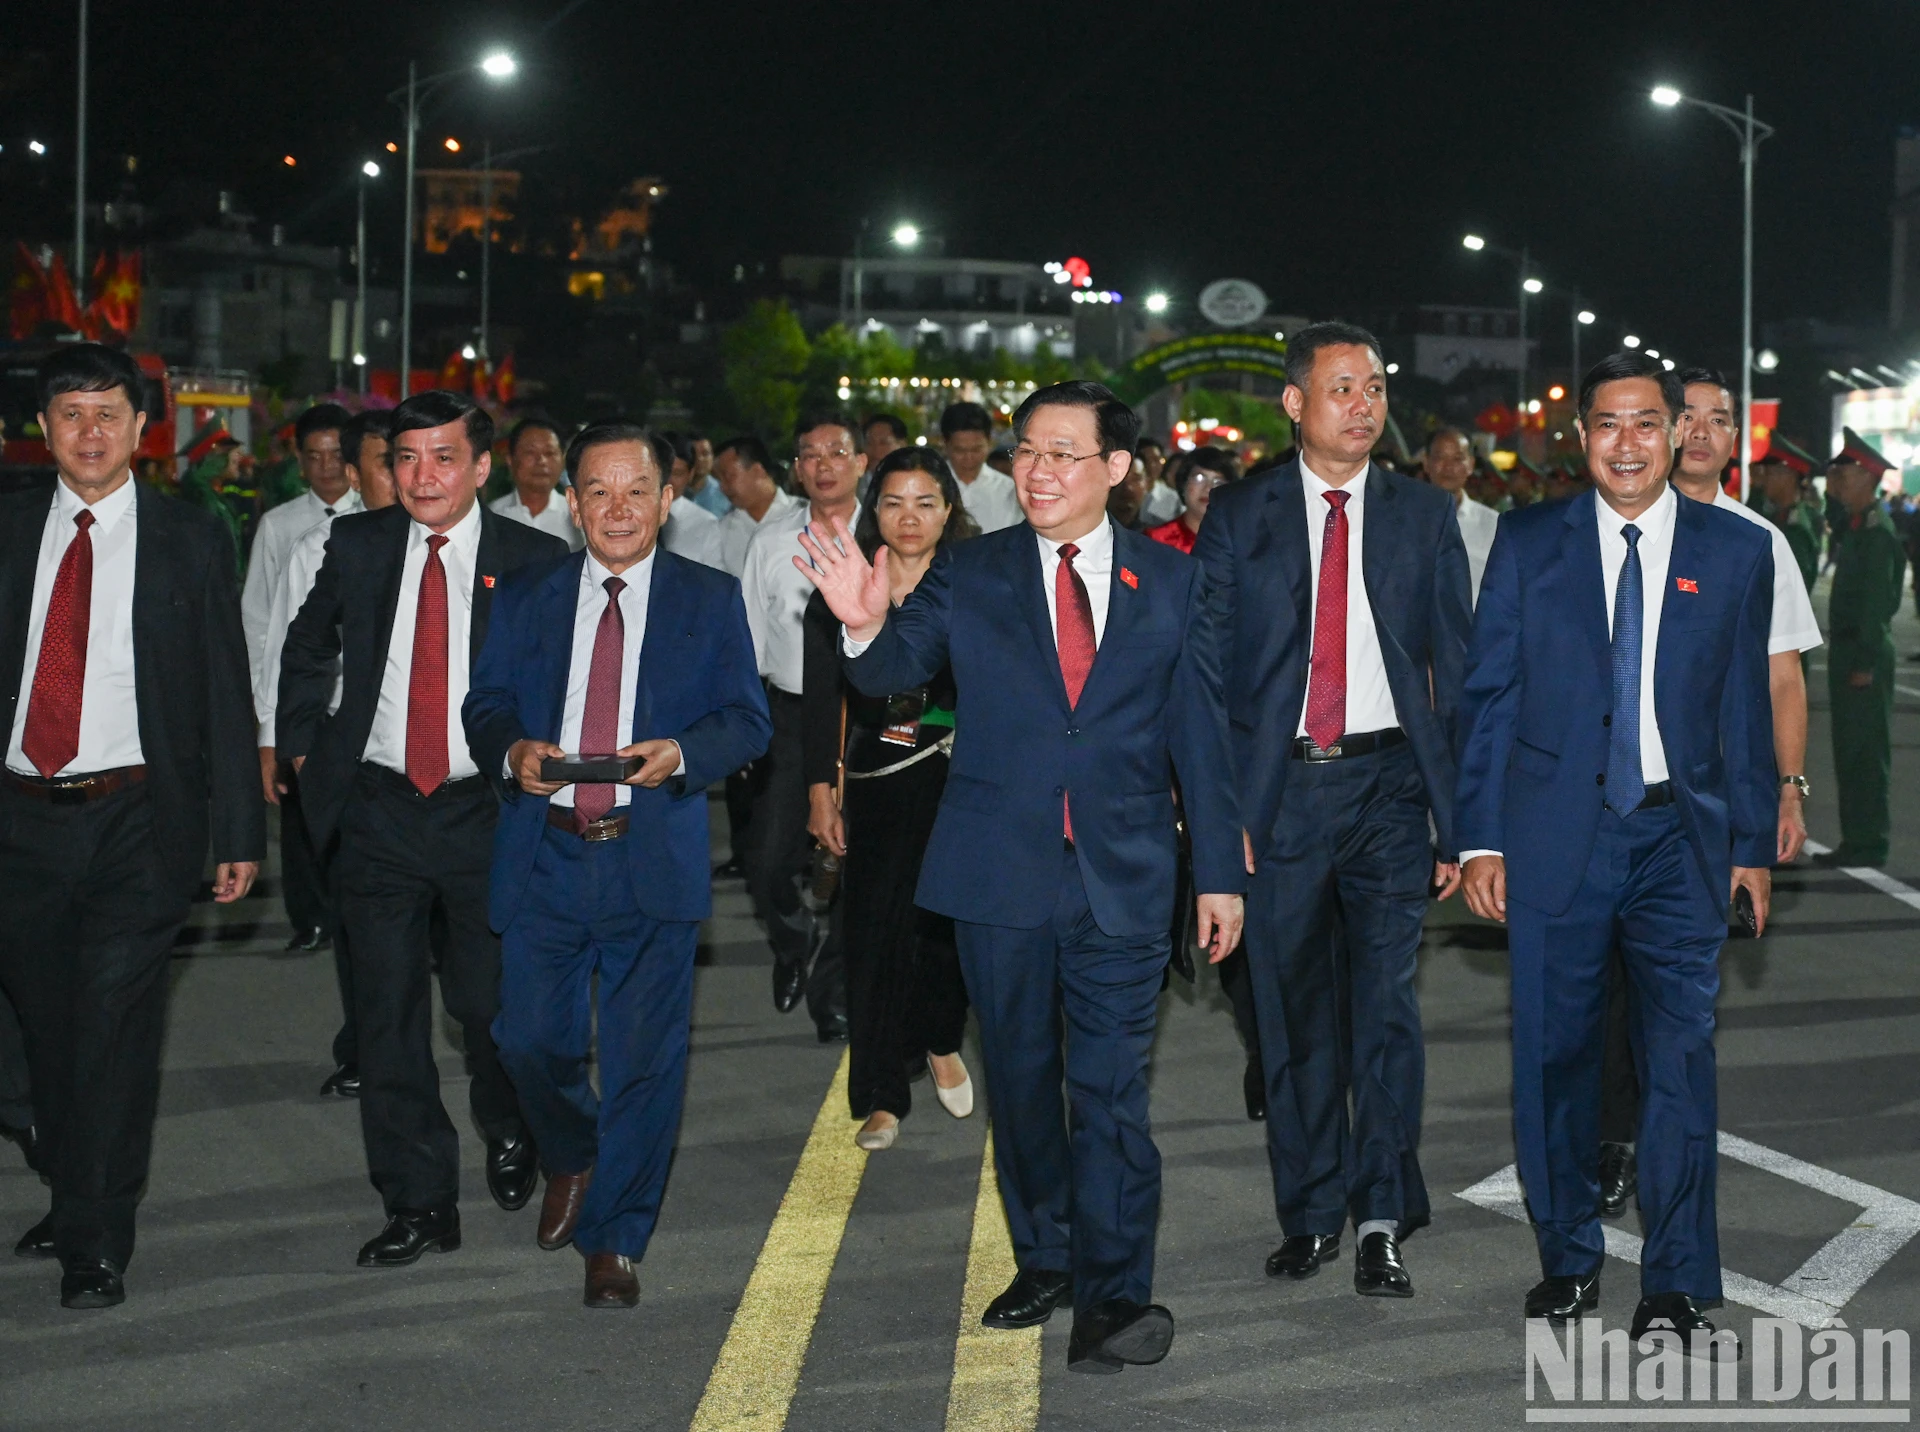 Chủ tịch Quốc hội Vương Đình Huệ cùng các đại biểu dự lễ khai mạc Lễ hội cà-phê Sơn La.

